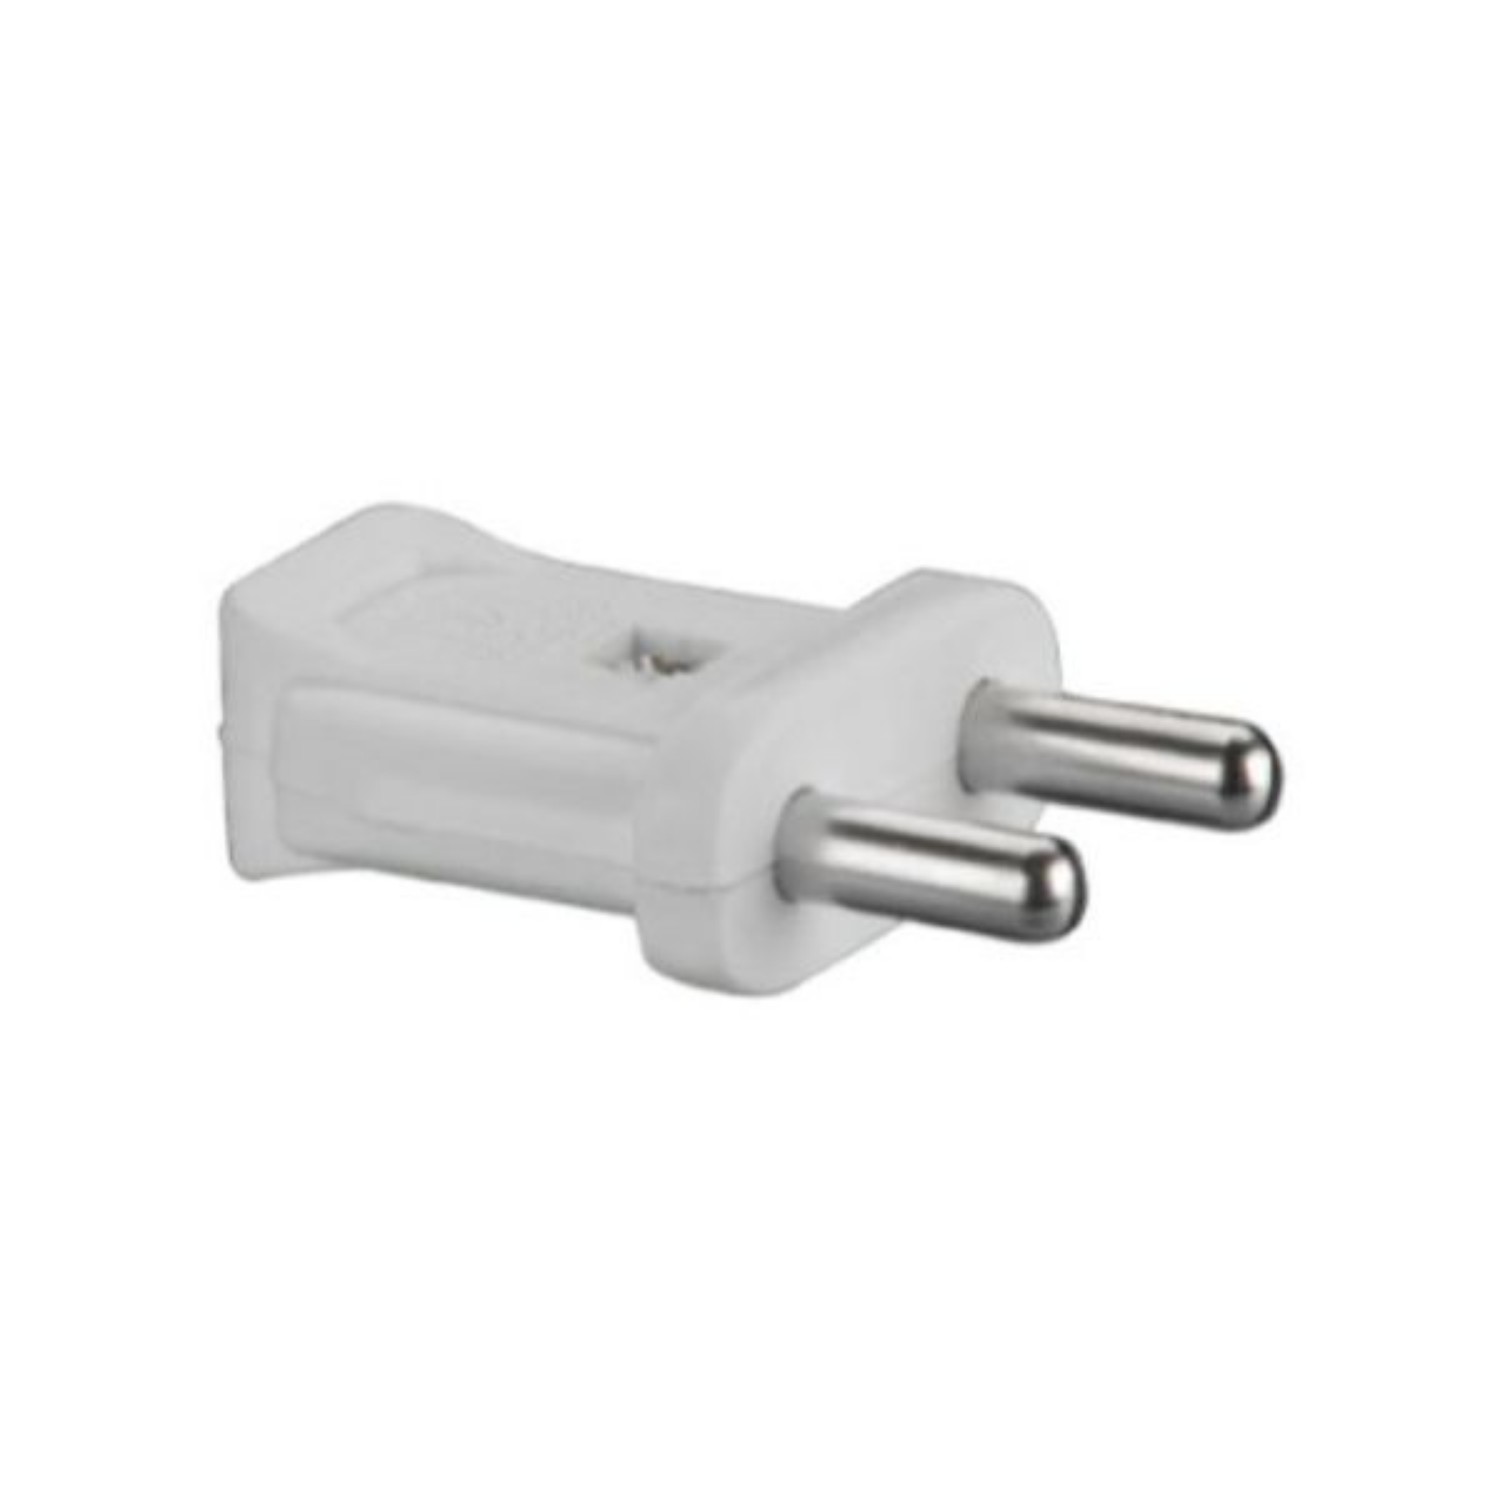 ANCHOR 3042 6 A 230 V 2 Pin Plug Top_0